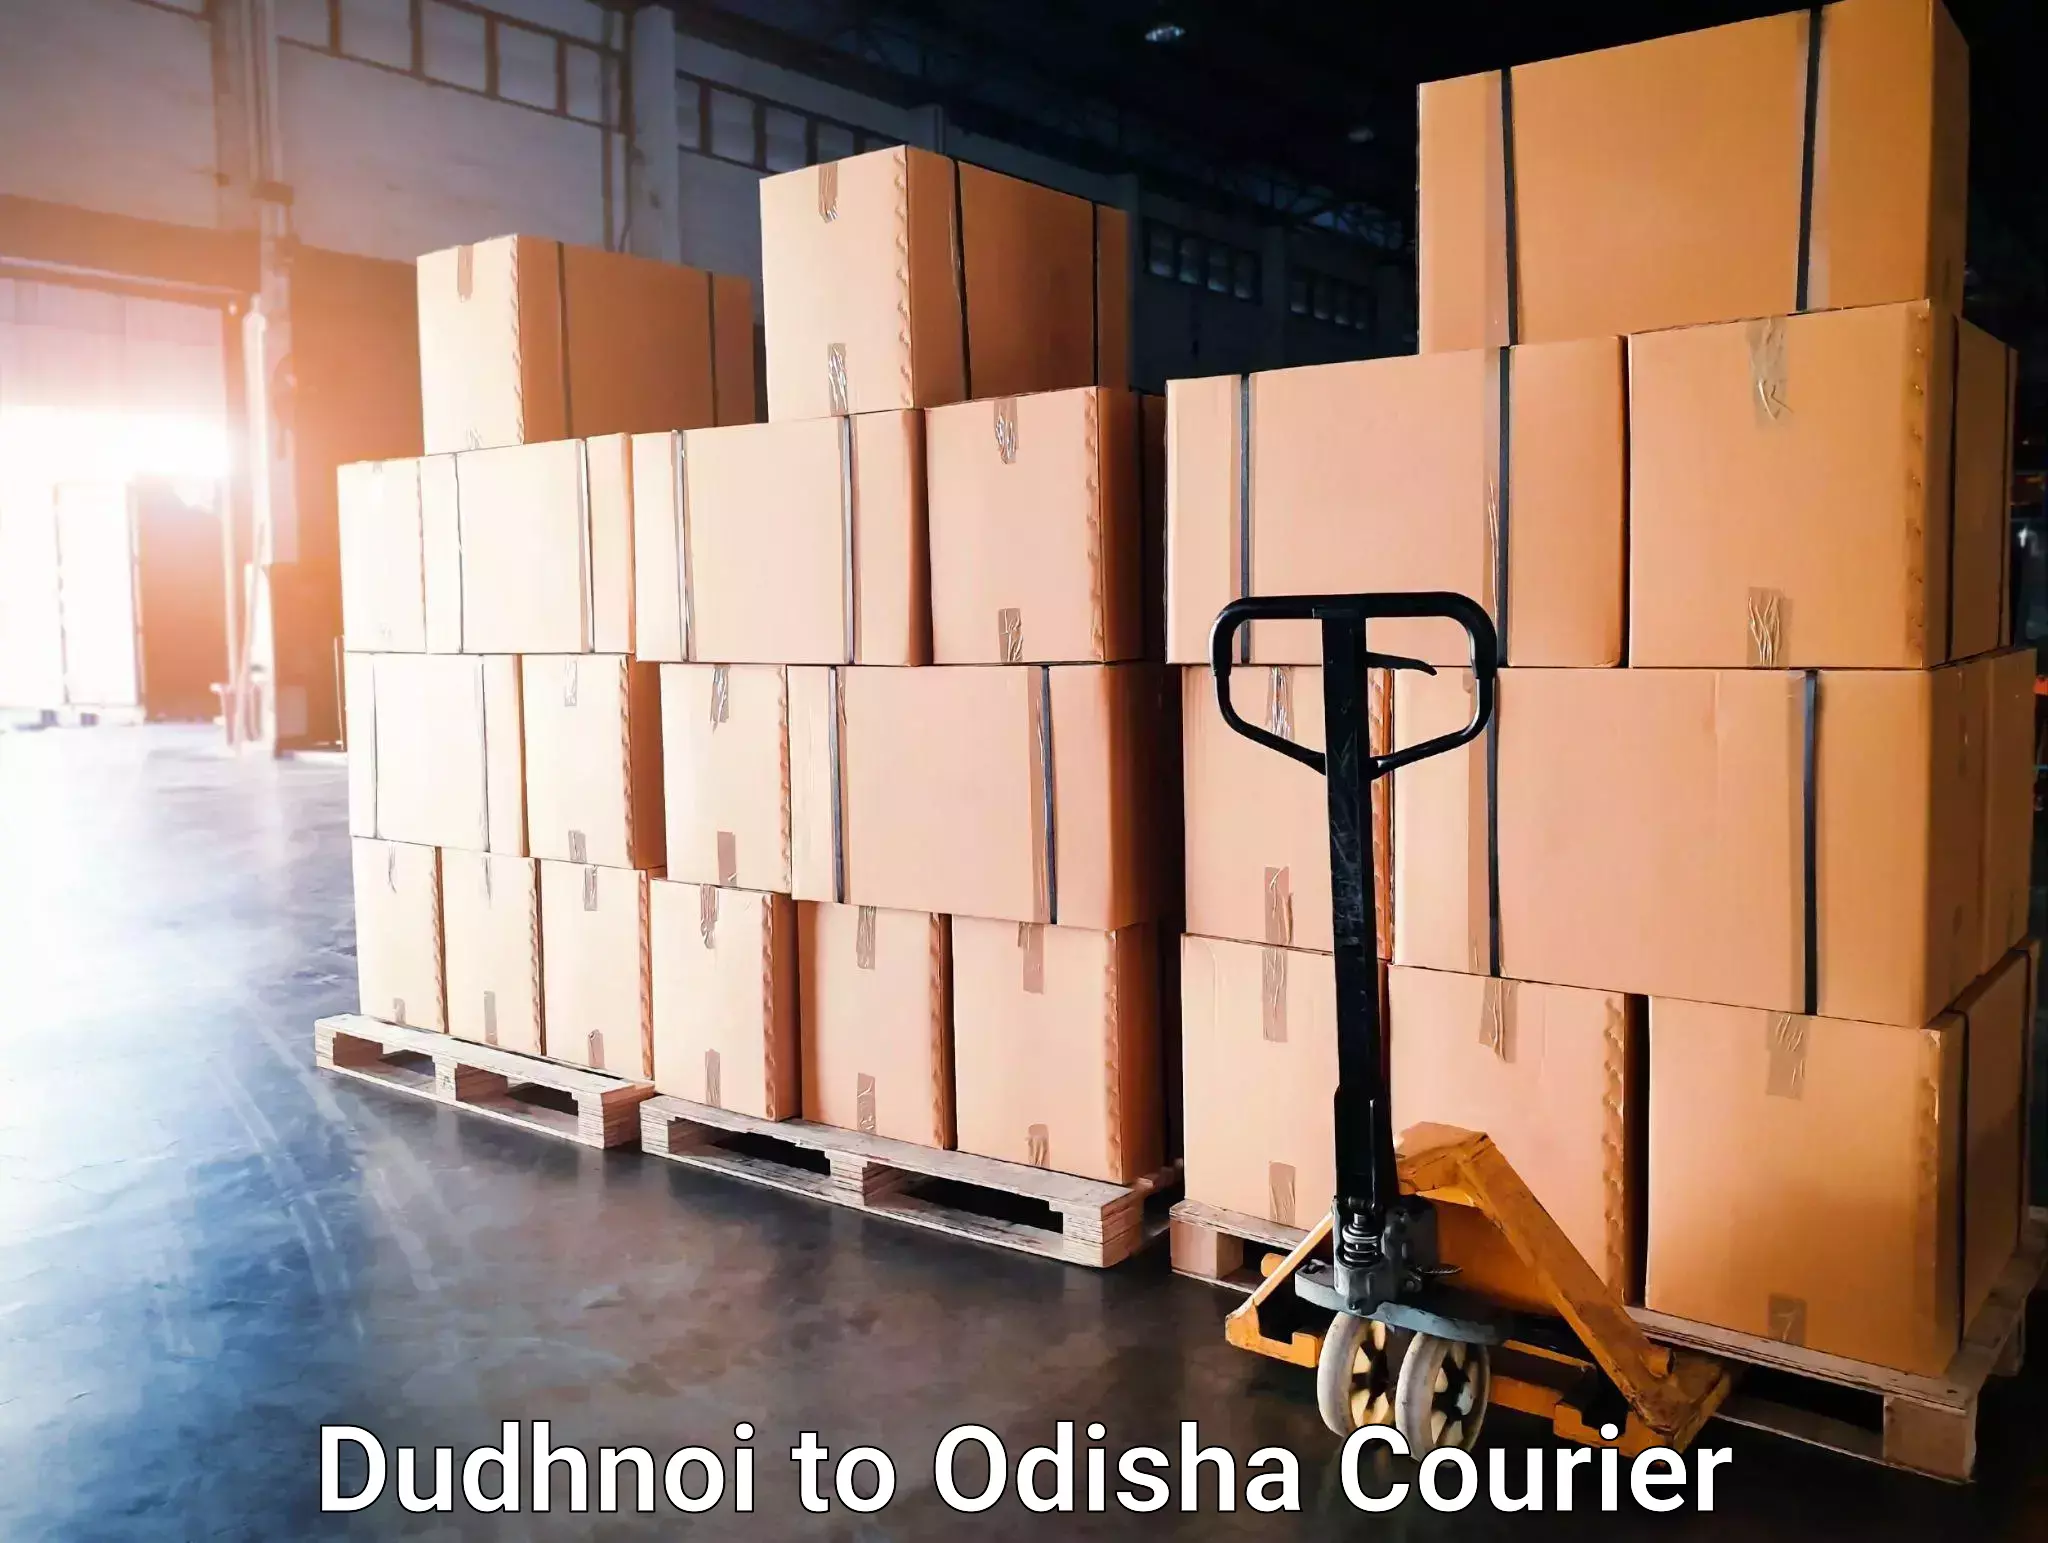 Next-day freight services Dudhnoi to Puri